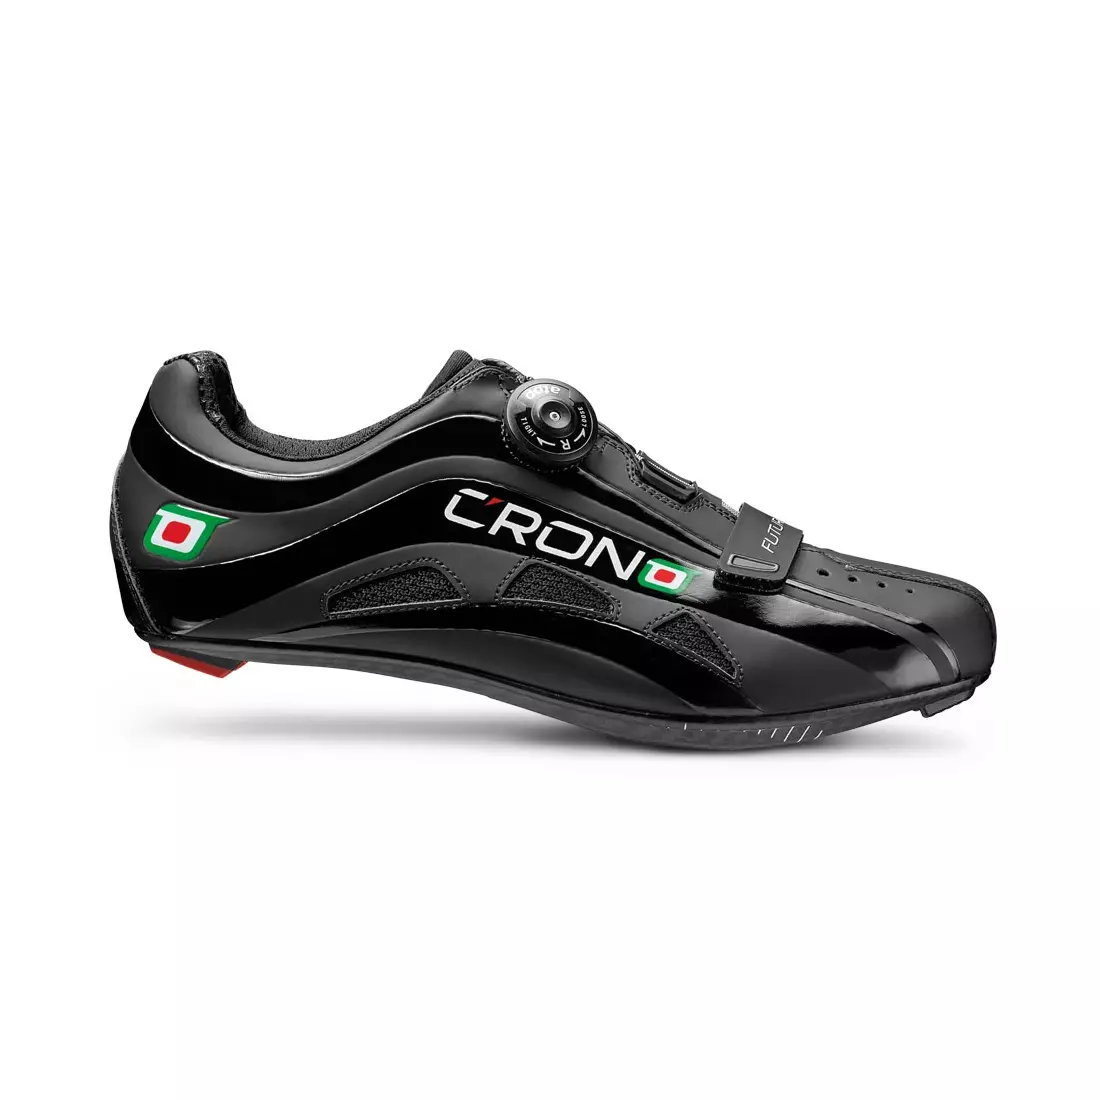 CRONO FUTURA NYLON - road cycling shoes - color: Black